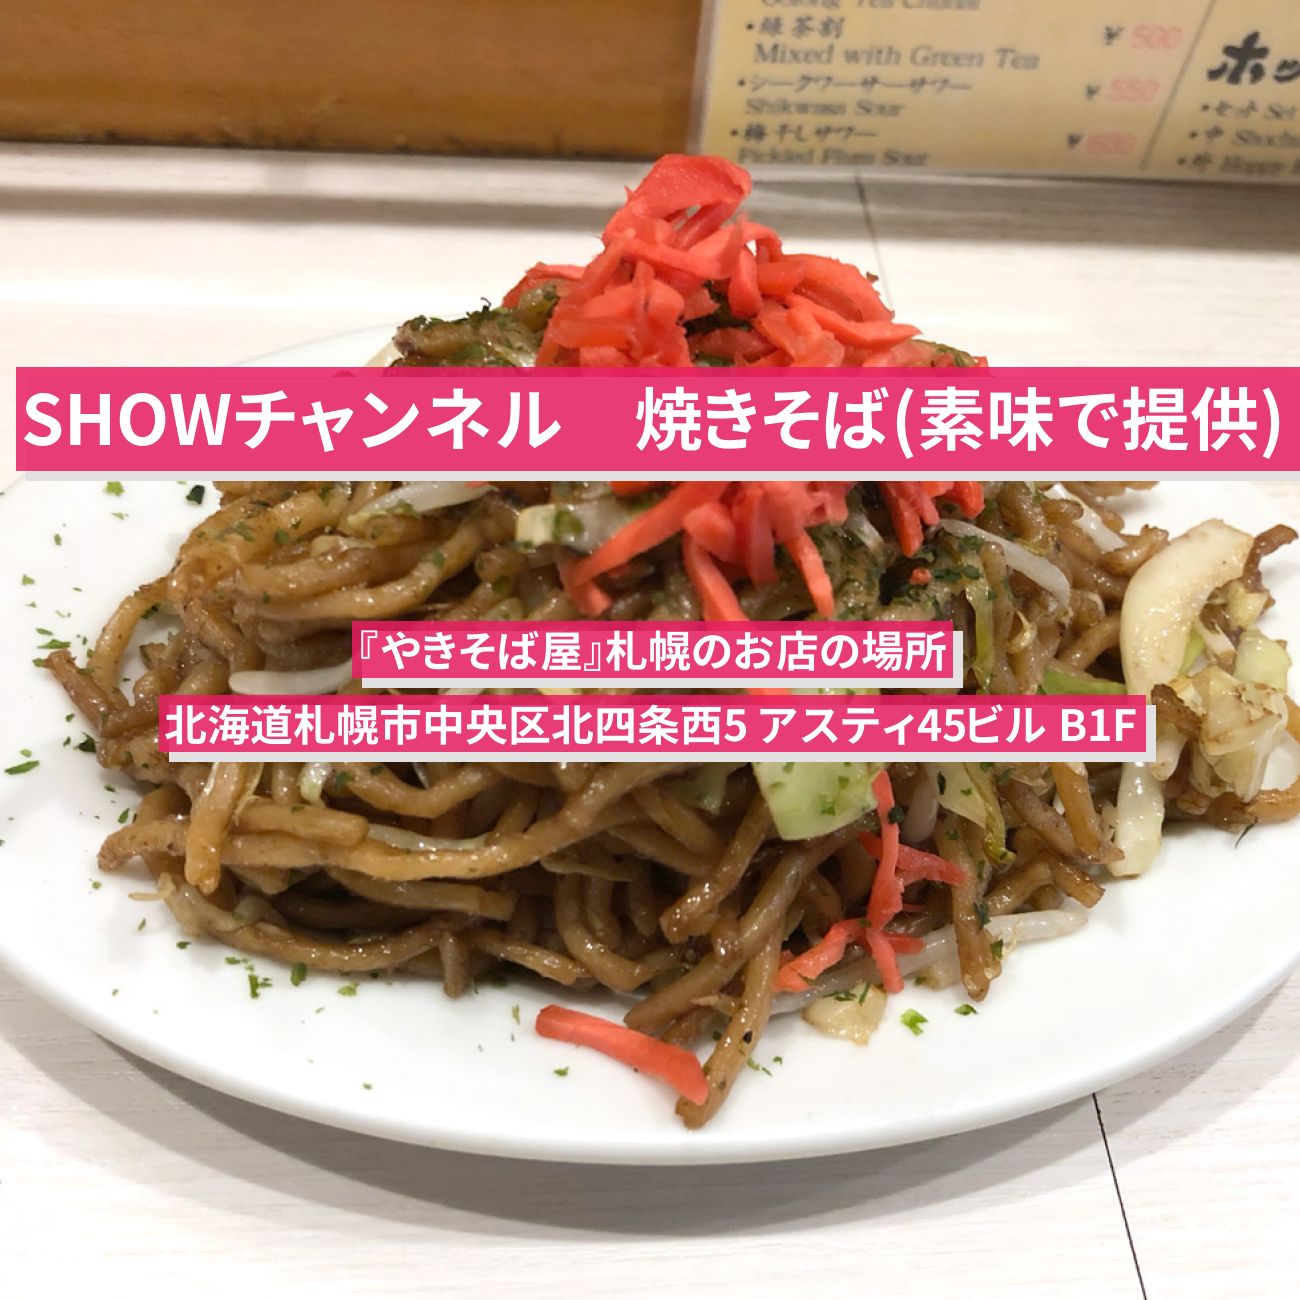 【SHOWチャンネル】焼きそば(素焼き)『やきそば屋』北海道札幌のお店の場所